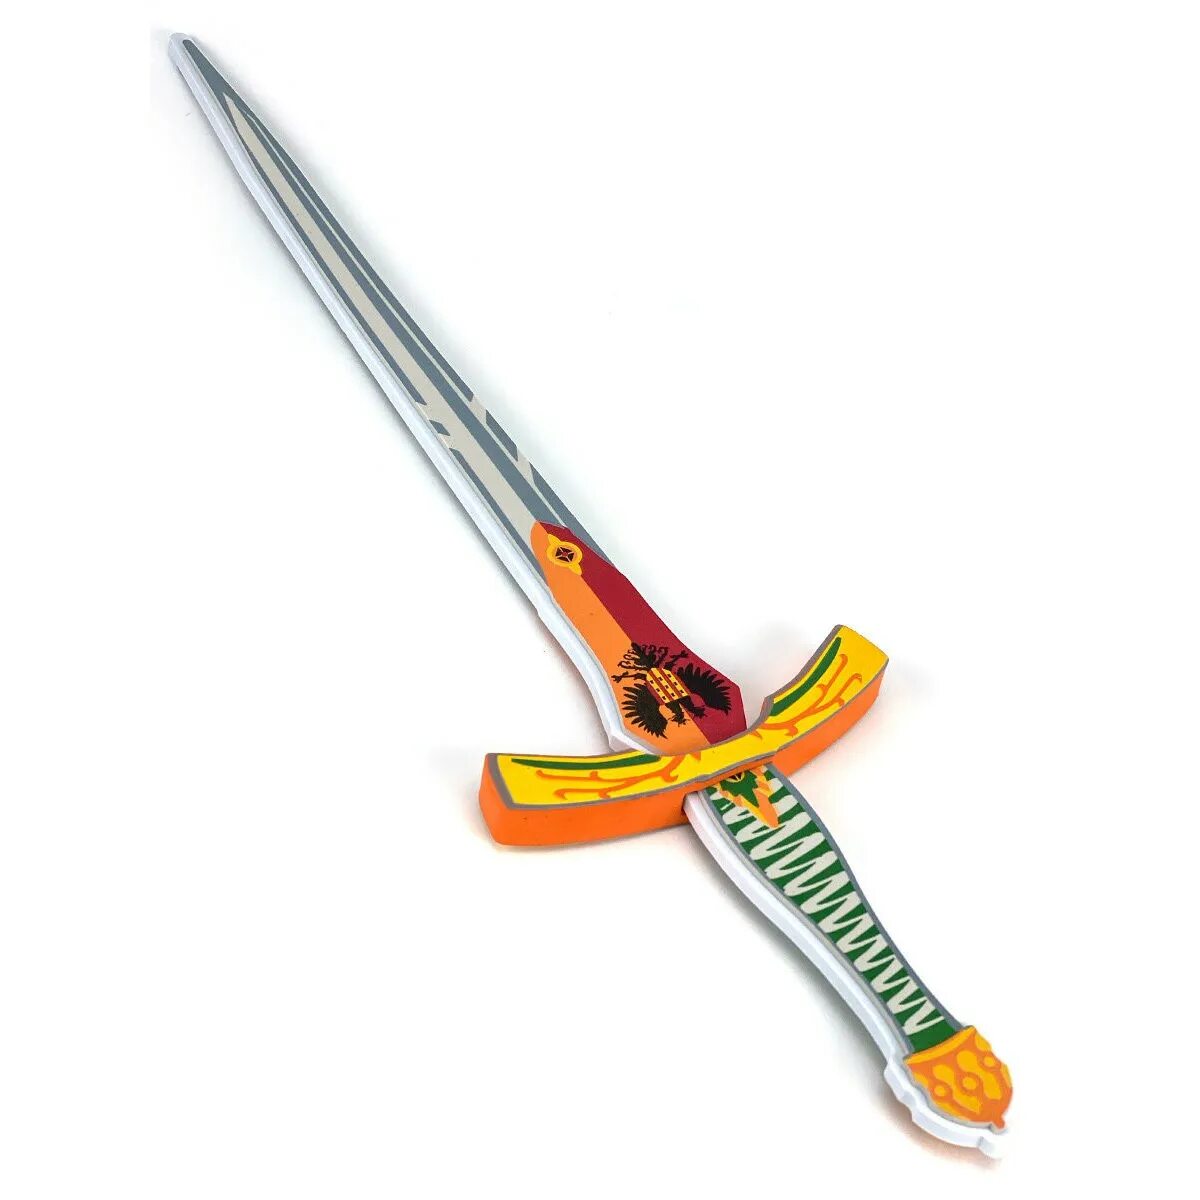 As metal отзывы. Игрушка меч. Городской меч. Красивый игрушечный меч. Игровое оружие мечи.